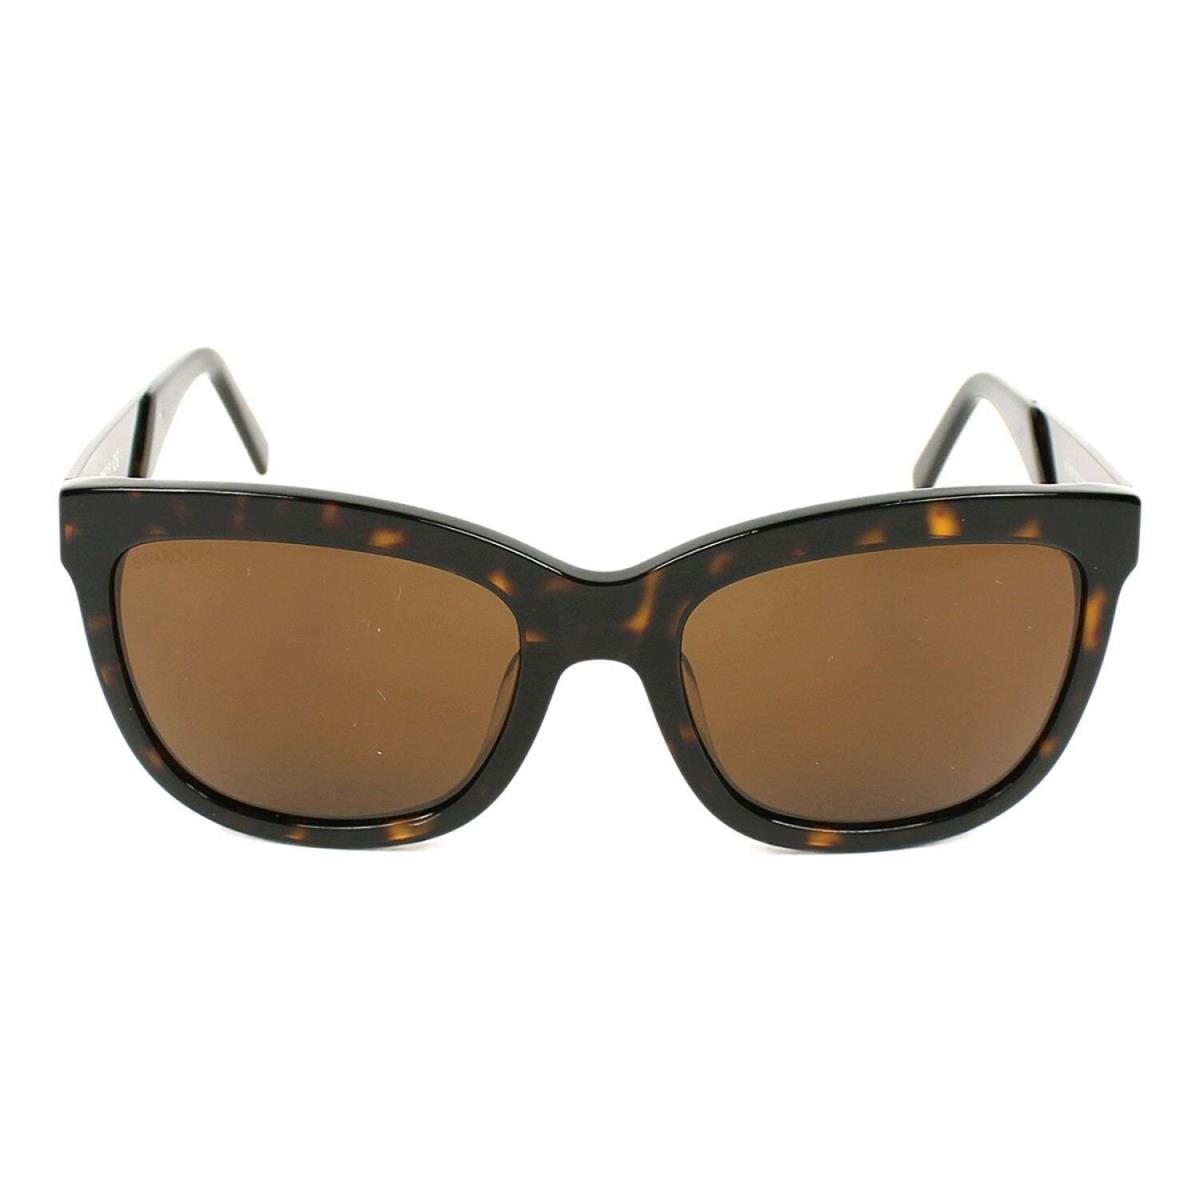 Swarovski Sunglasses SW 125 52E Dark Havana / Brown 54 mm SK0125 - Dark Havana / Brown Frame, Brown Lens